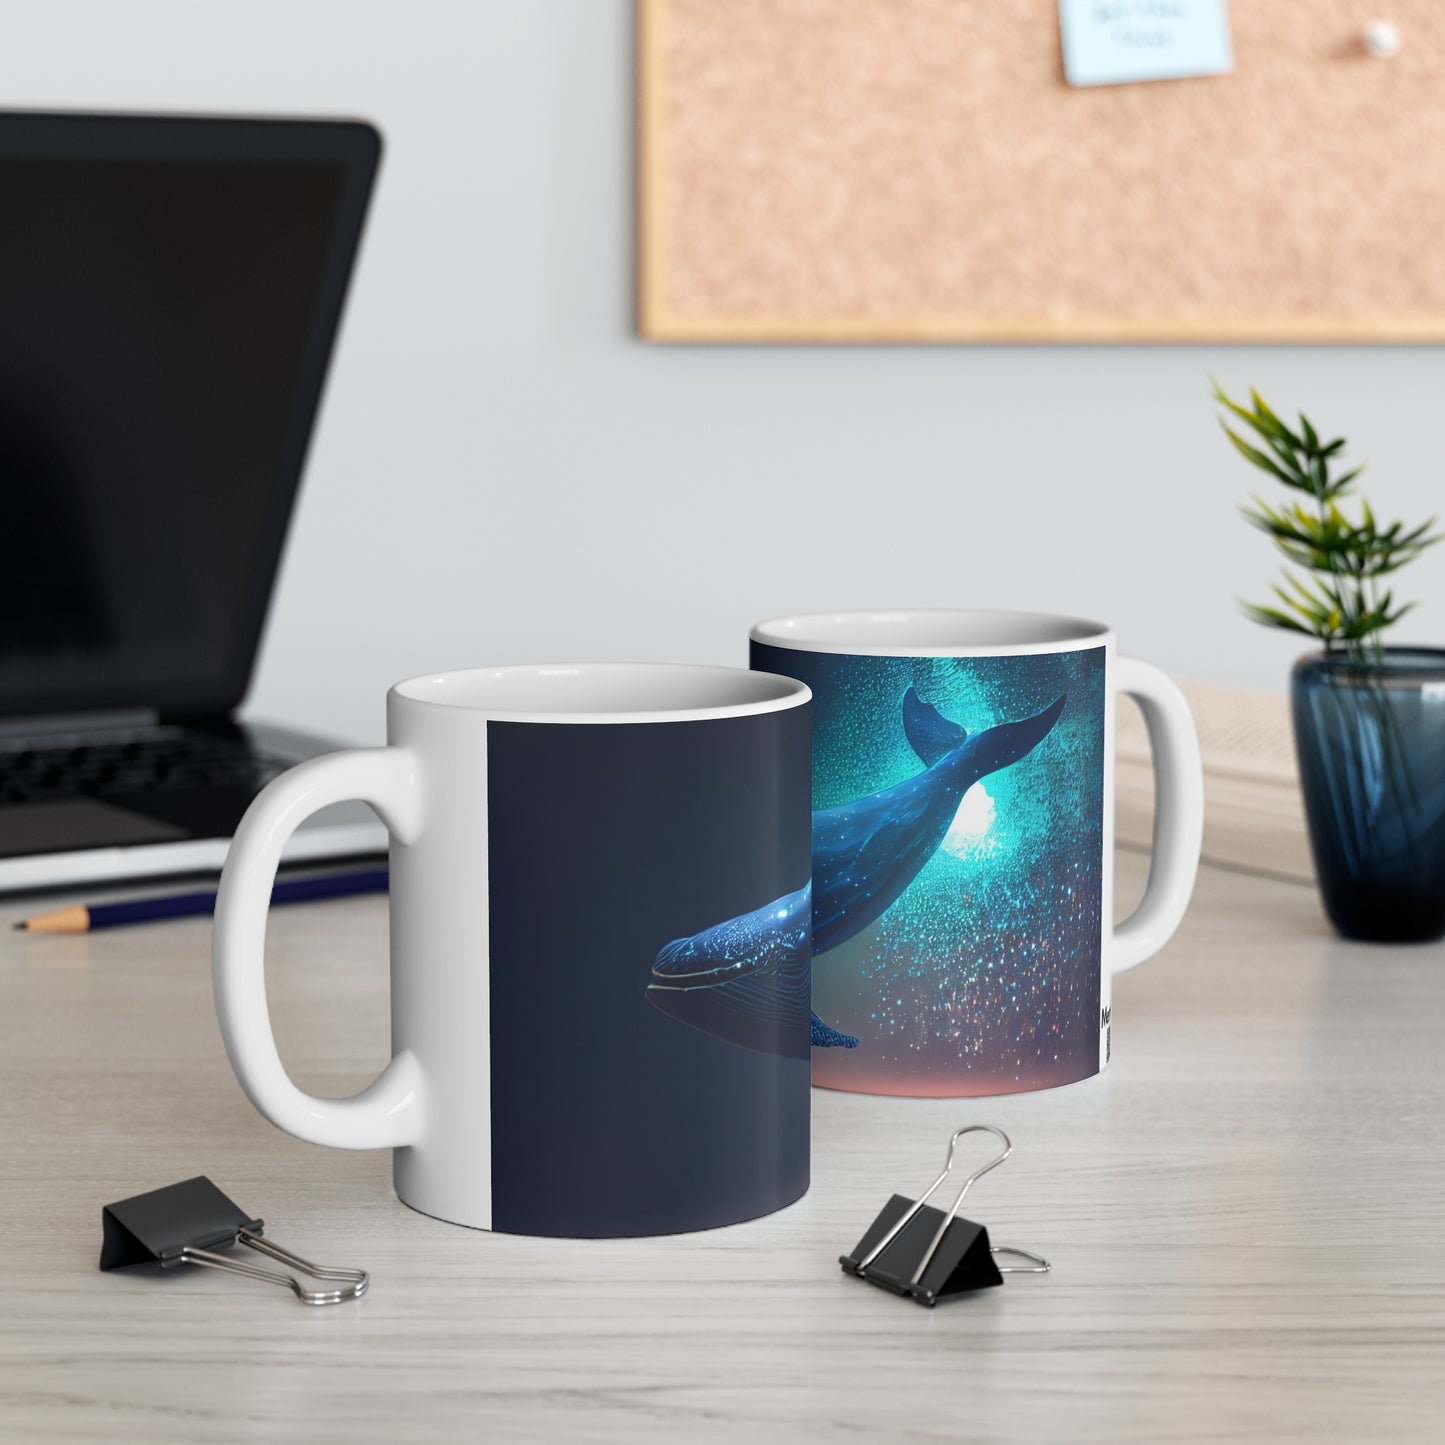 Dreamy Blue whale - Ceramic Mug 11oz